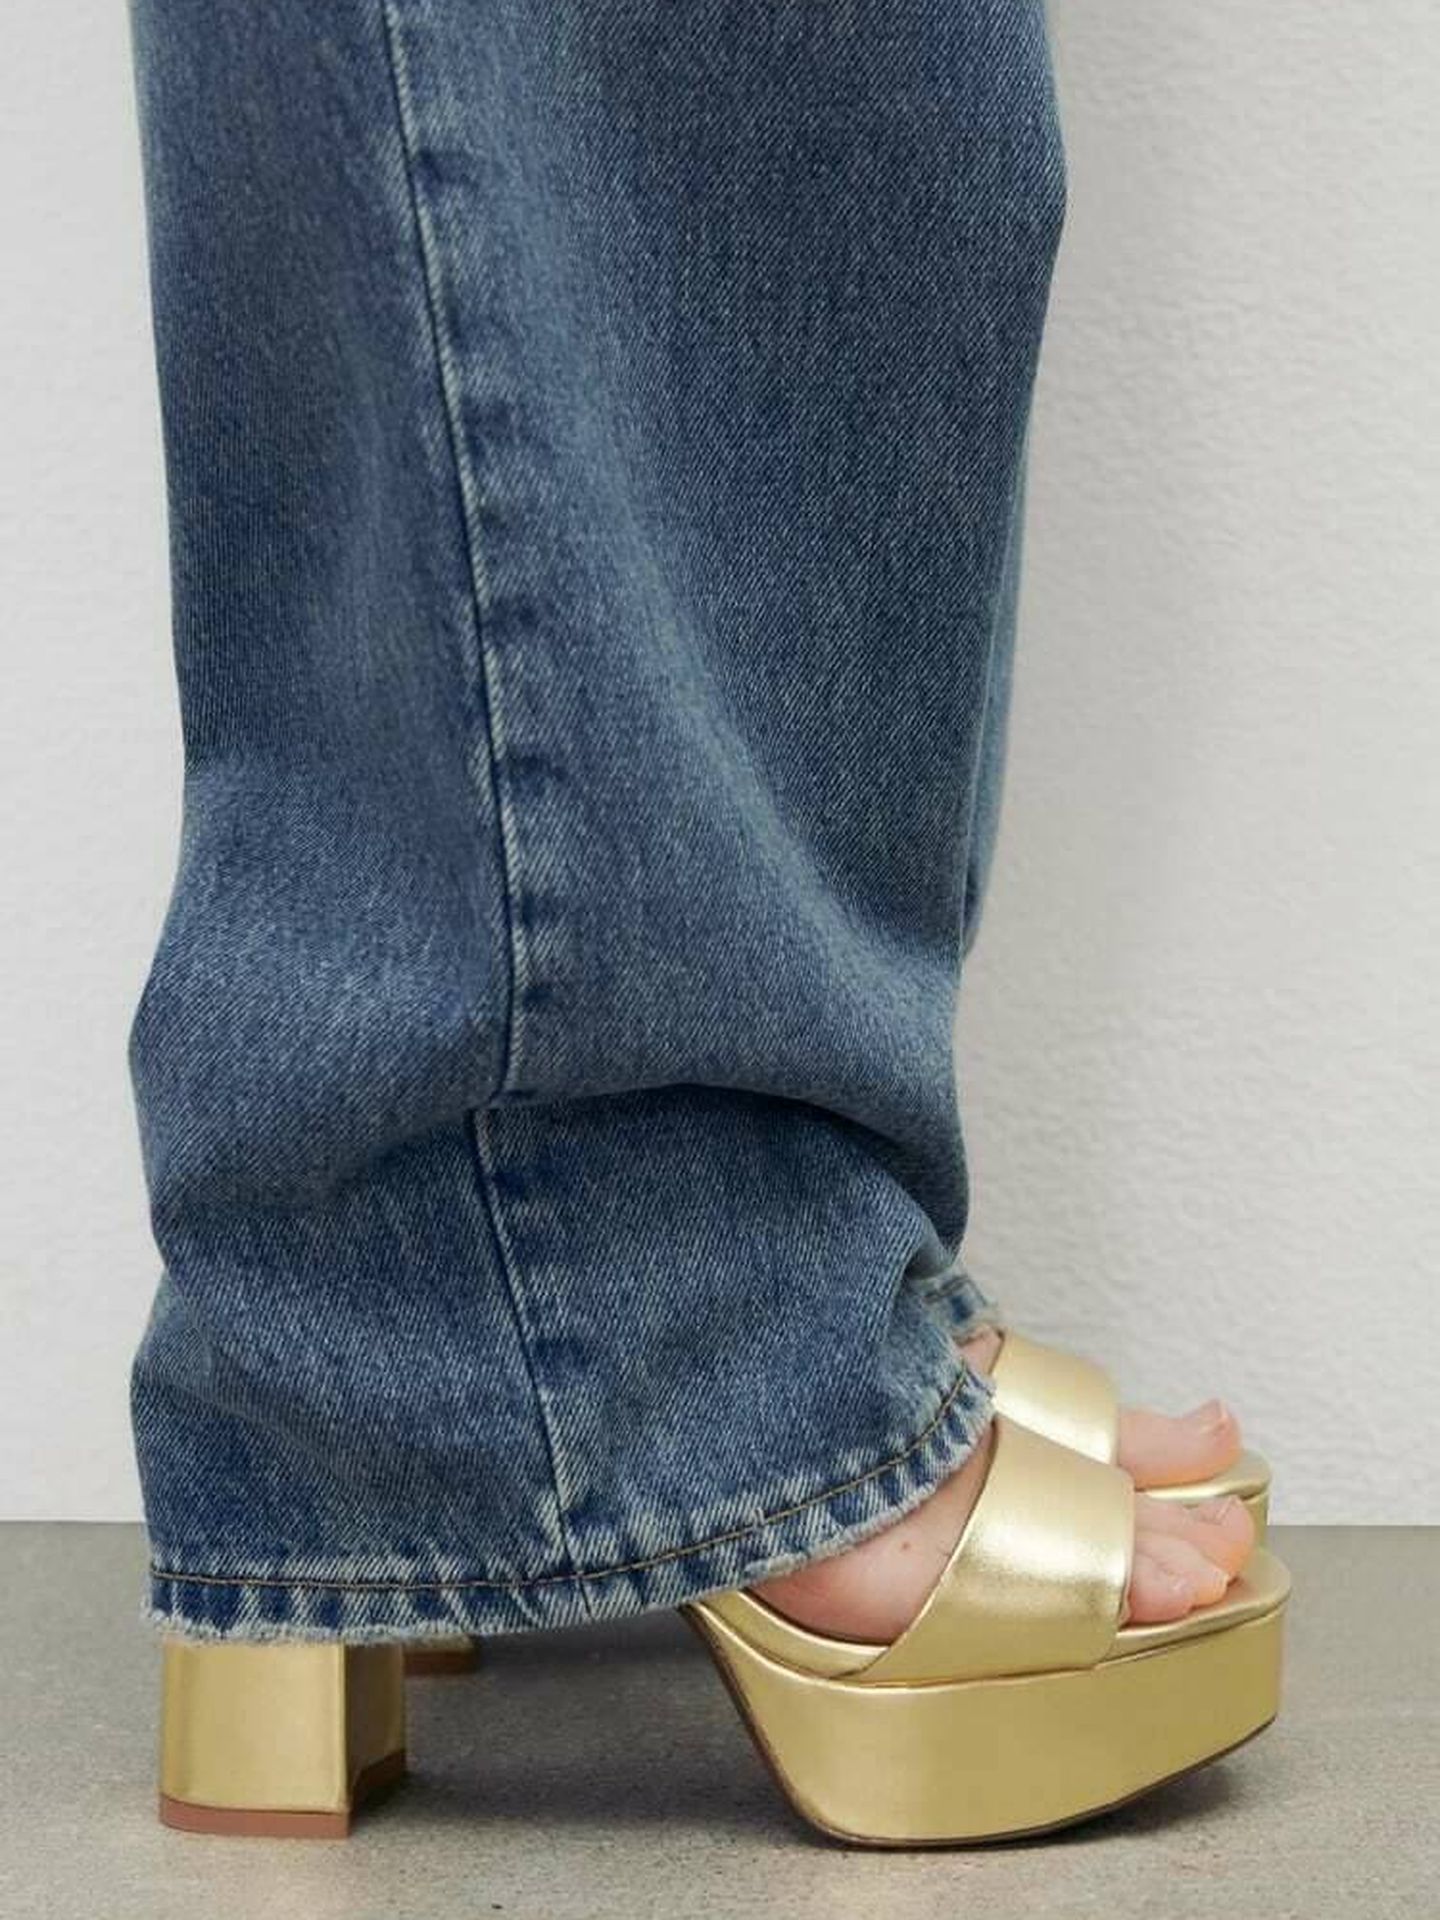 Las primeras sandalias de Zara. (Cortesía)